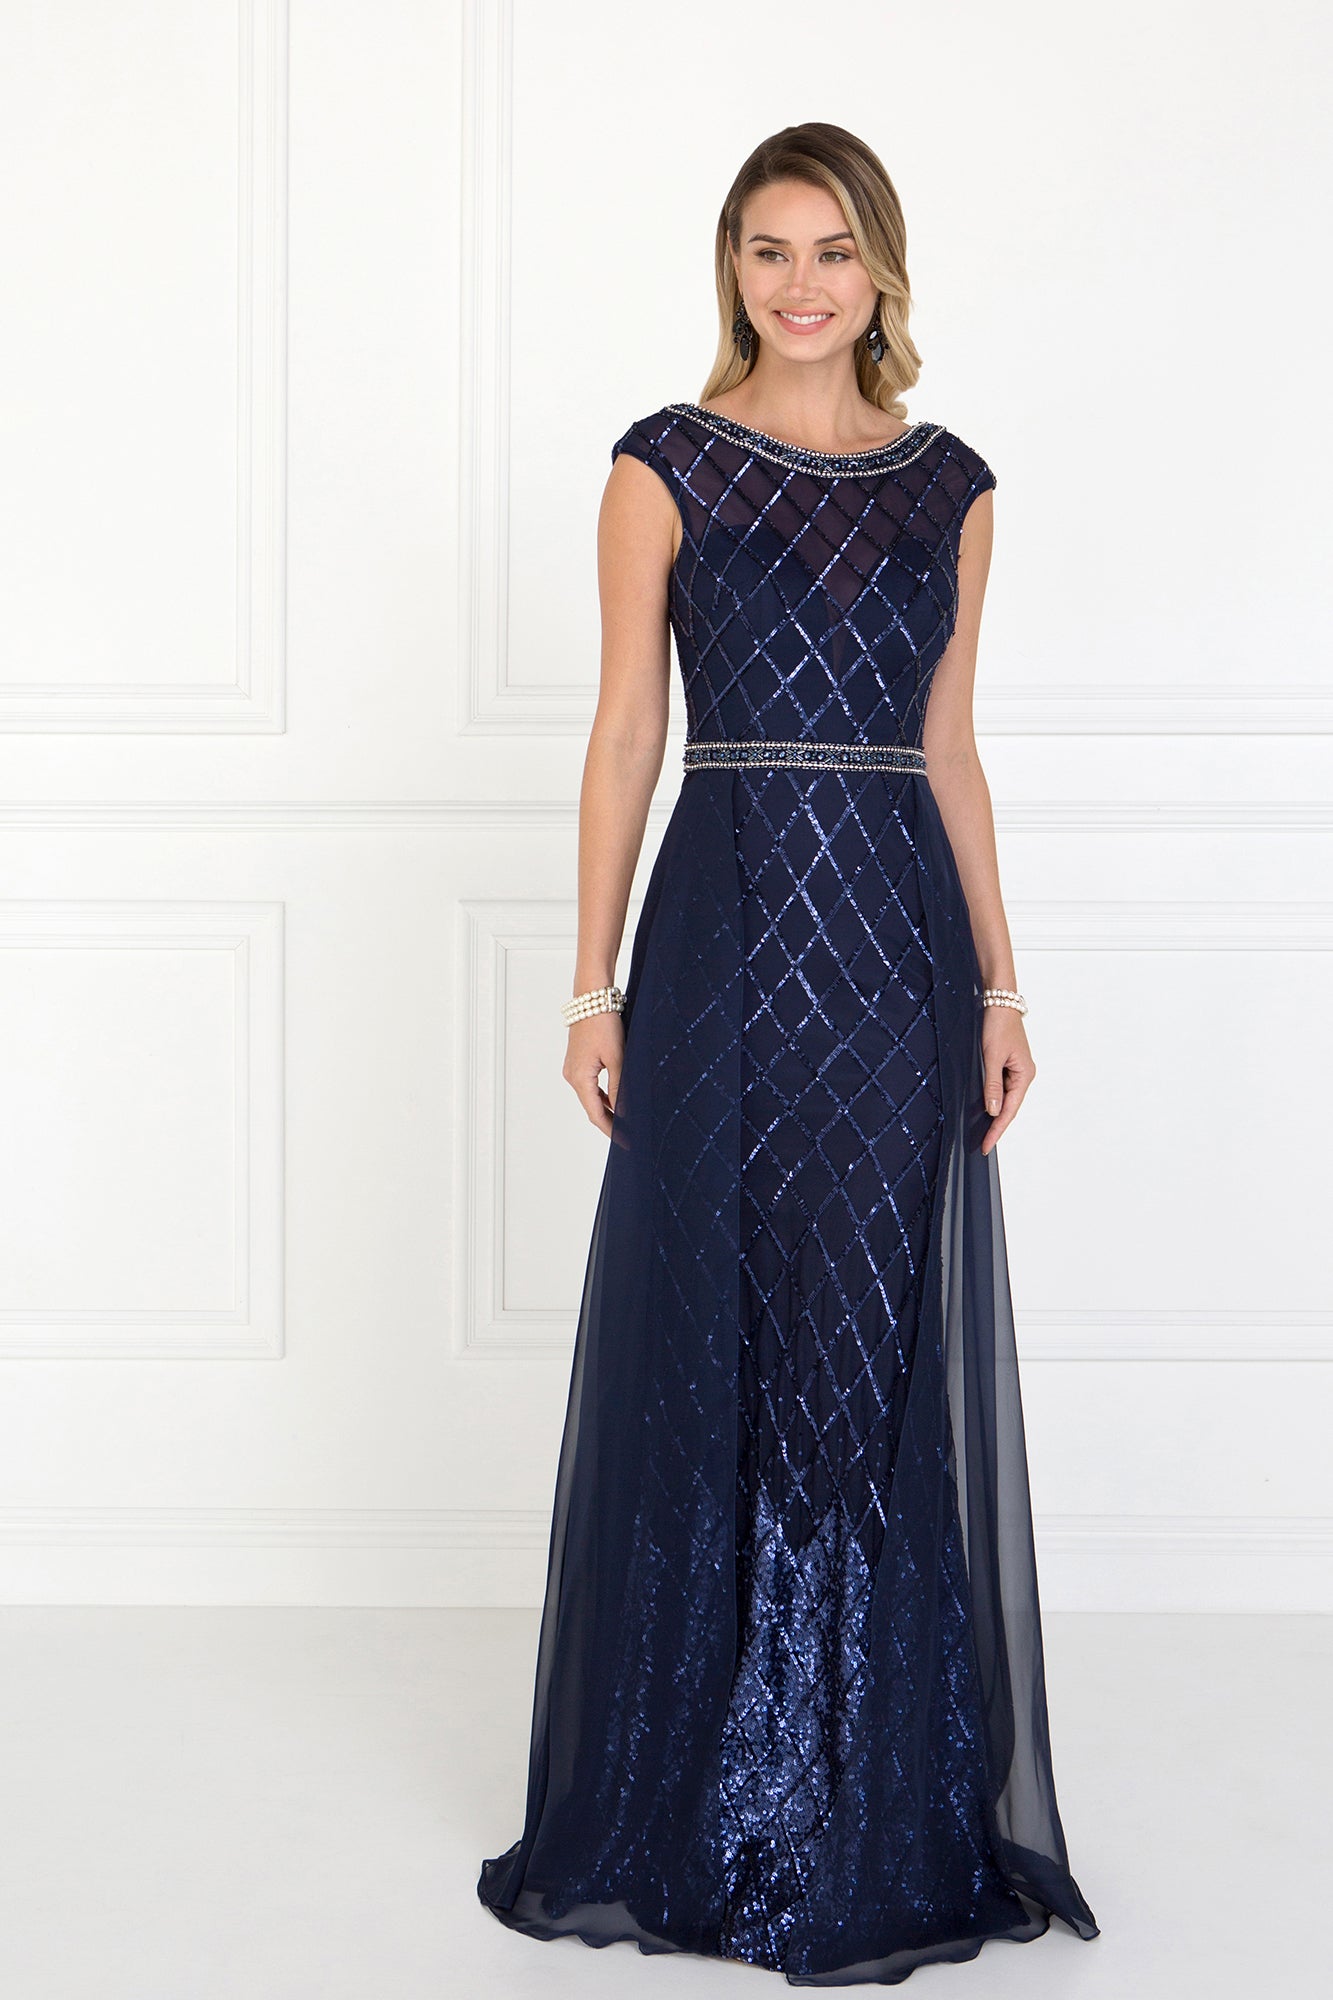 Chiffon Empire Dress by GL1577 Elizabeth K - Special Occasion